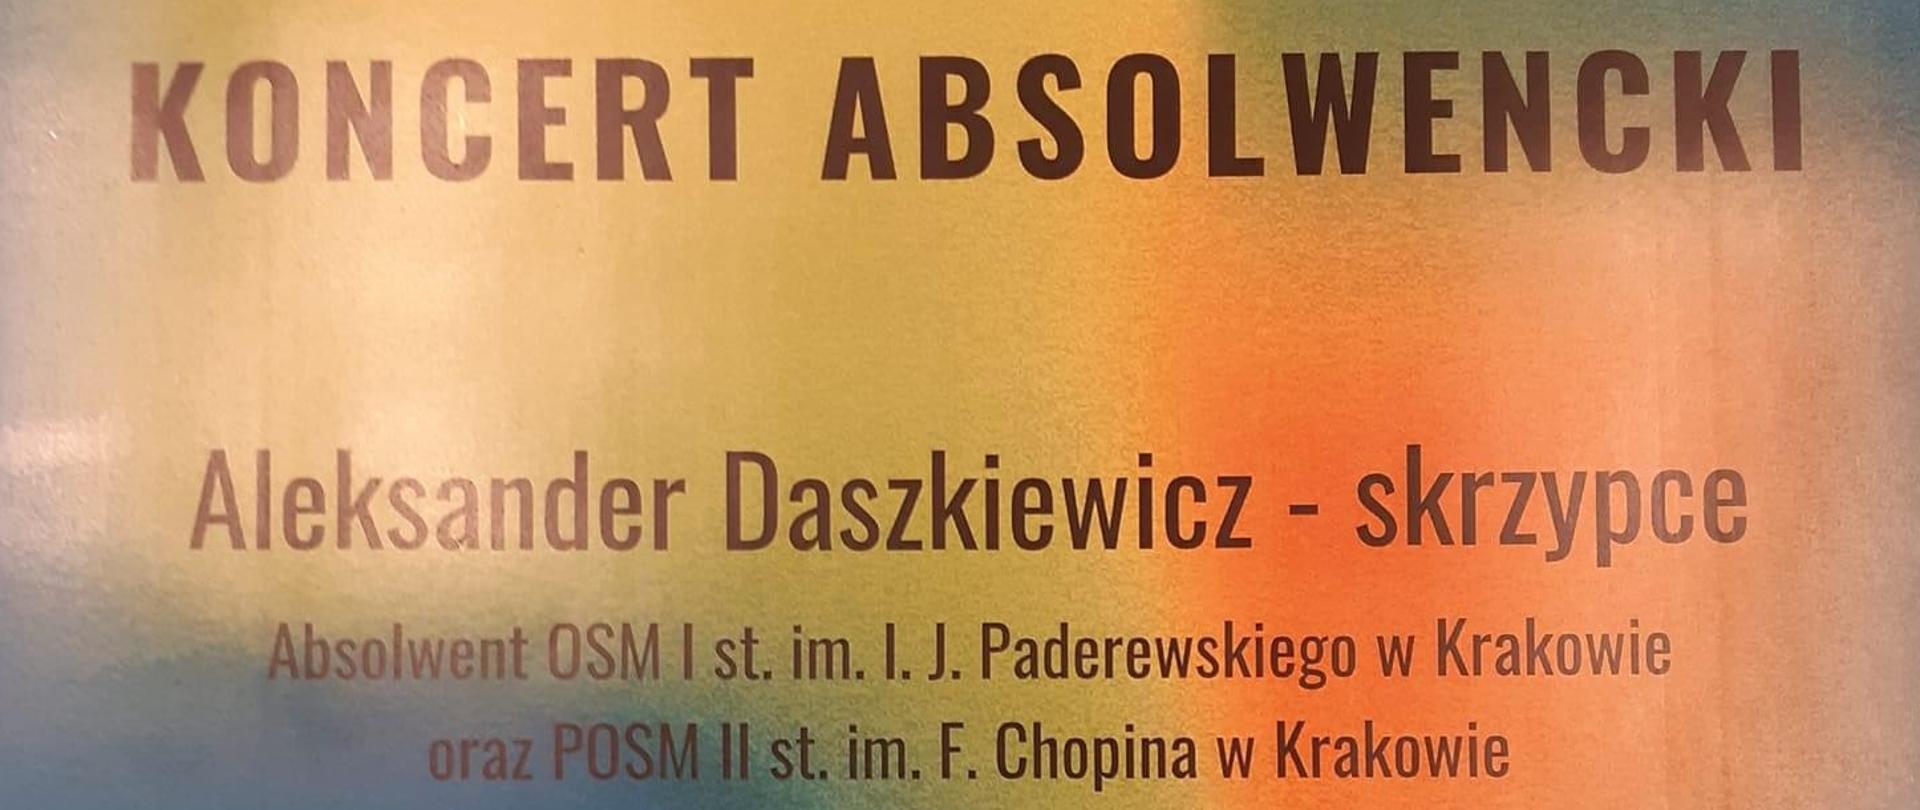 Baner, kolory tła niebieskie i żółte; tekst: Koncert absolwencki - Aleksander Daszkiewicz - skrzypce; Michał Roemer - fortepian; program koncertu